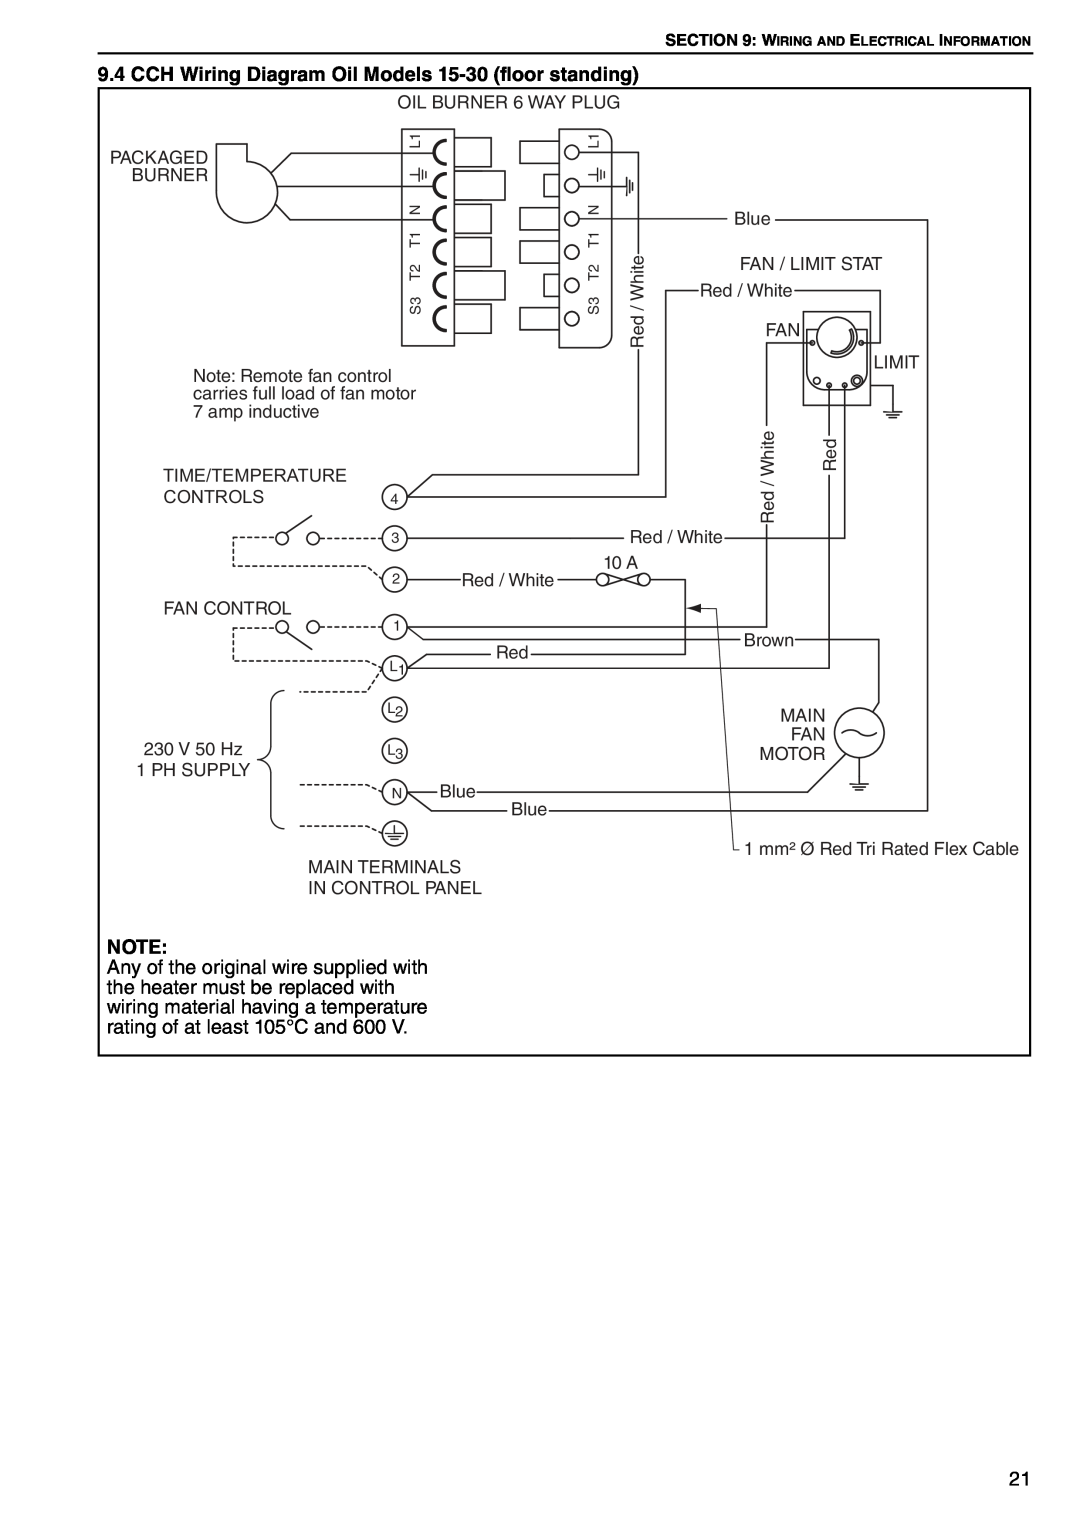 Roberts Gorden POP-ECA/PGP-ECA 015 to 0100 service manual CCH Wiring Diagram Oil Models 15-30 floor standing 